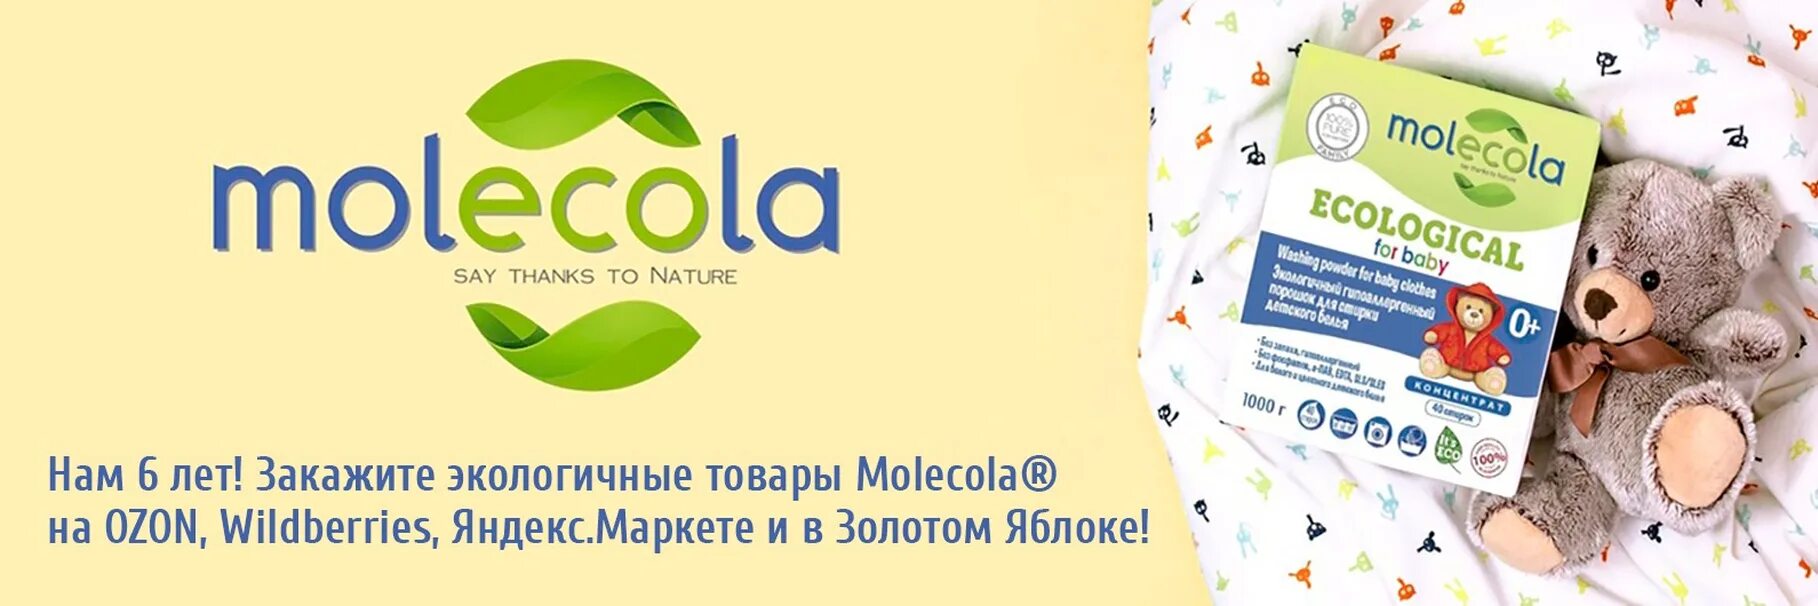 Natural say. Molecola ecological логотип. Molecola картинки бренда. Molecola ecological стиральный порошок logo. Molecola кислородный отбеливатель экологичный, суперконцентрат, 300 г.